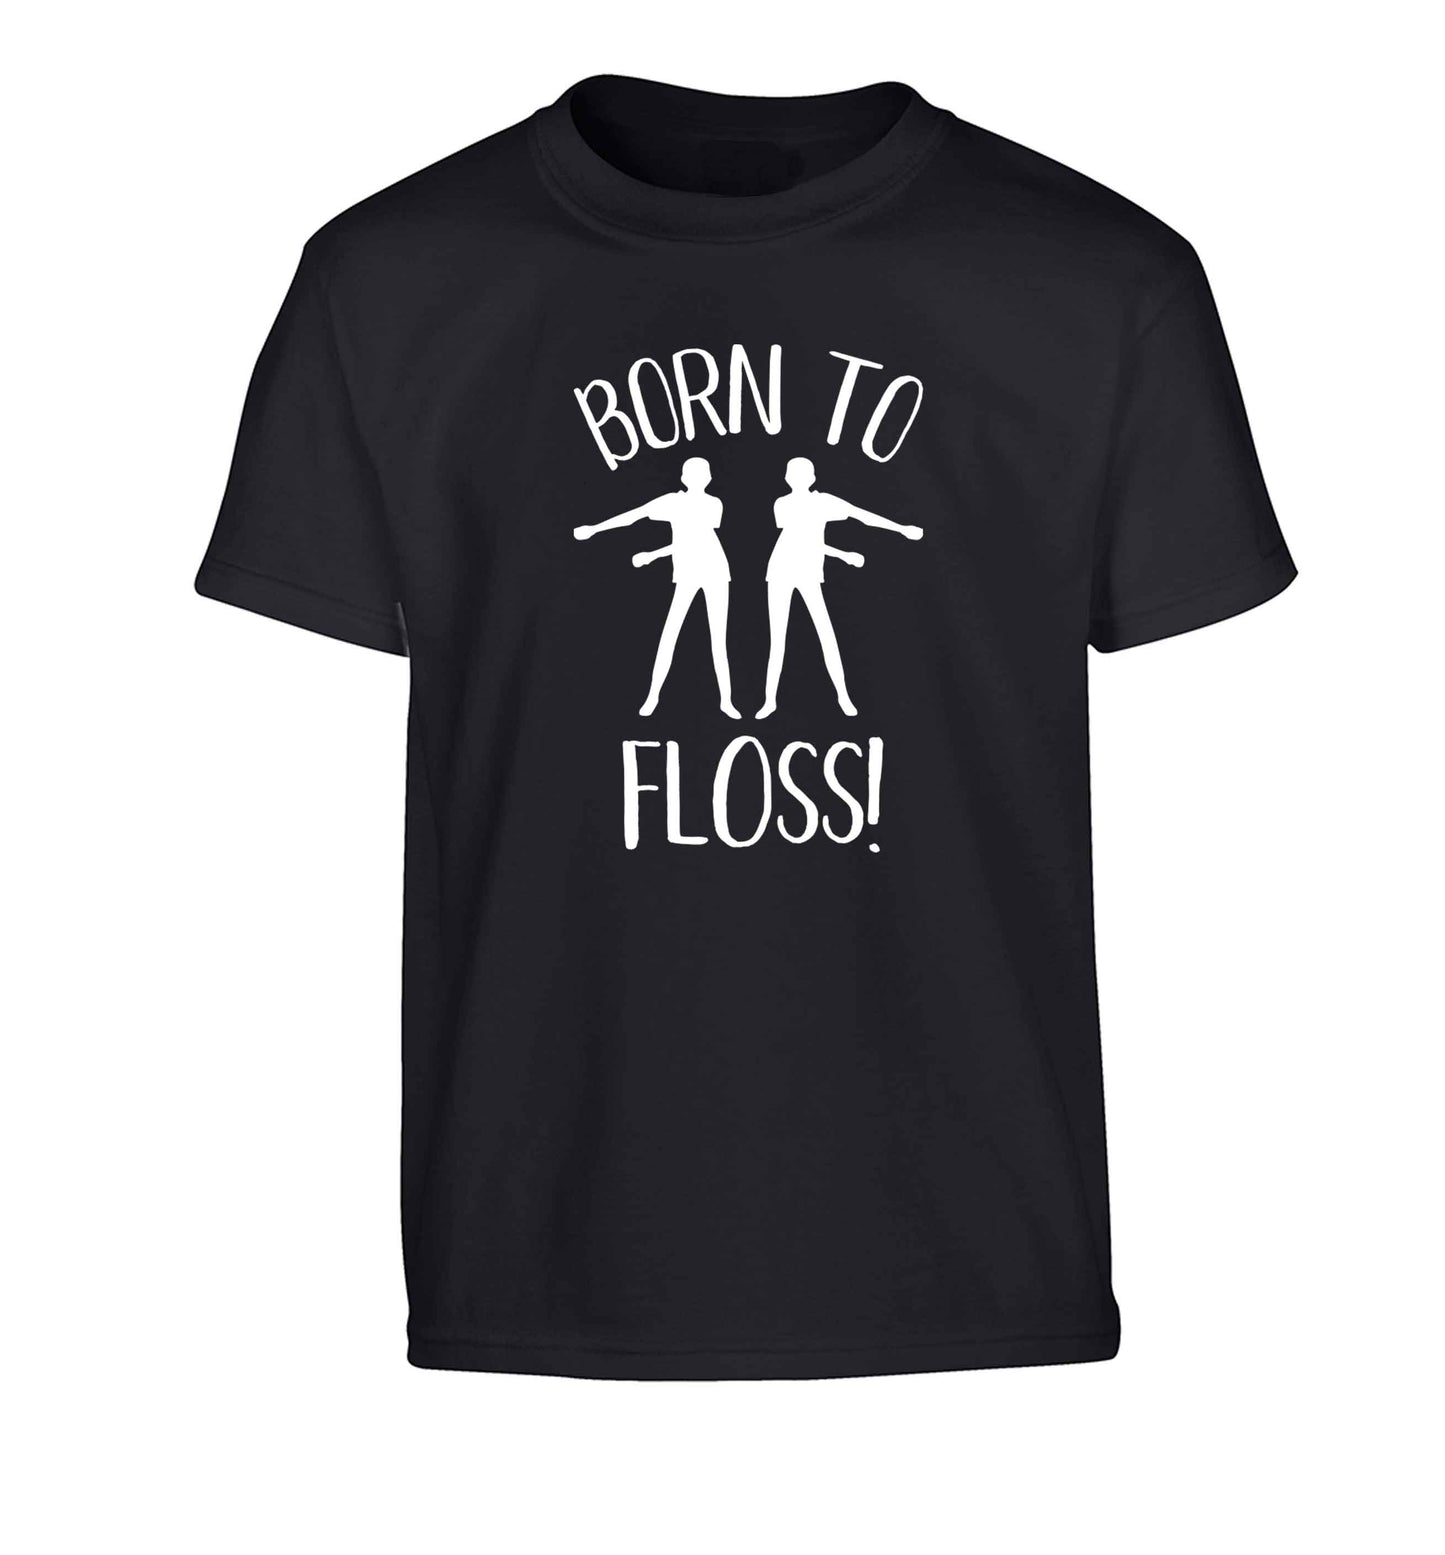 Born to floss Children's black Tshirt 12-13 Years